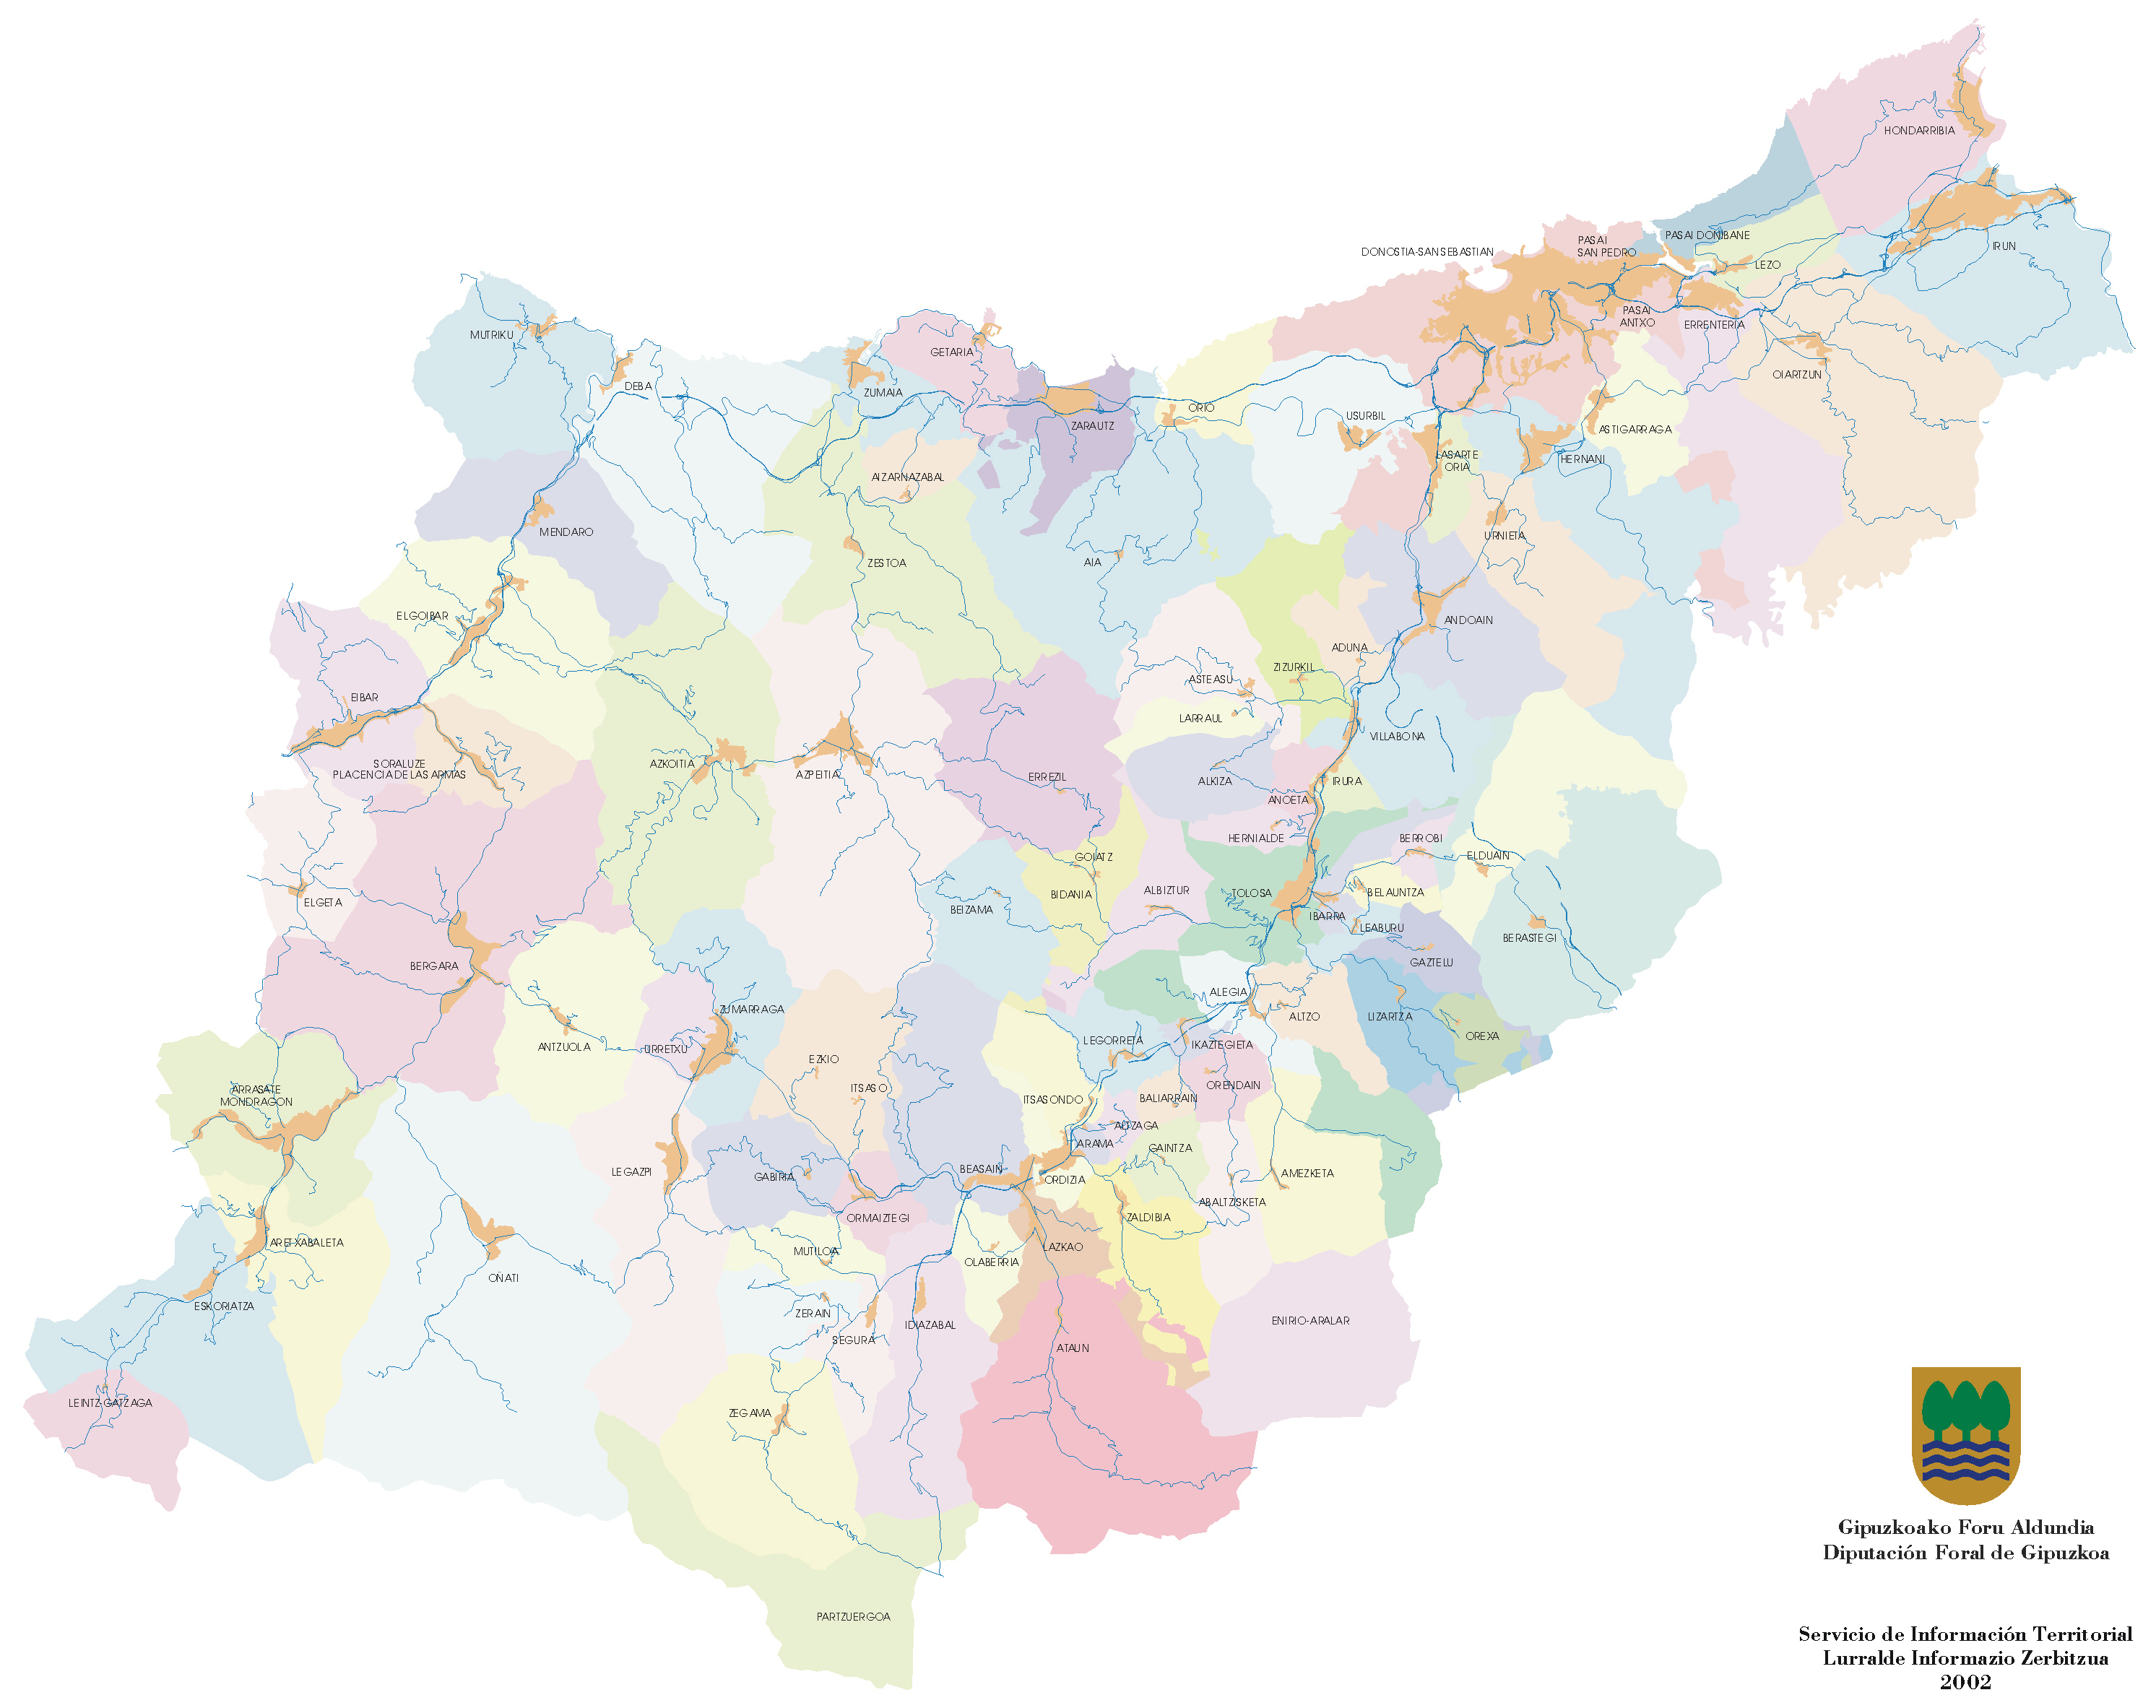 Municipios, Mancomunidades y Cascos urbanos de Guipúzcoa 2002